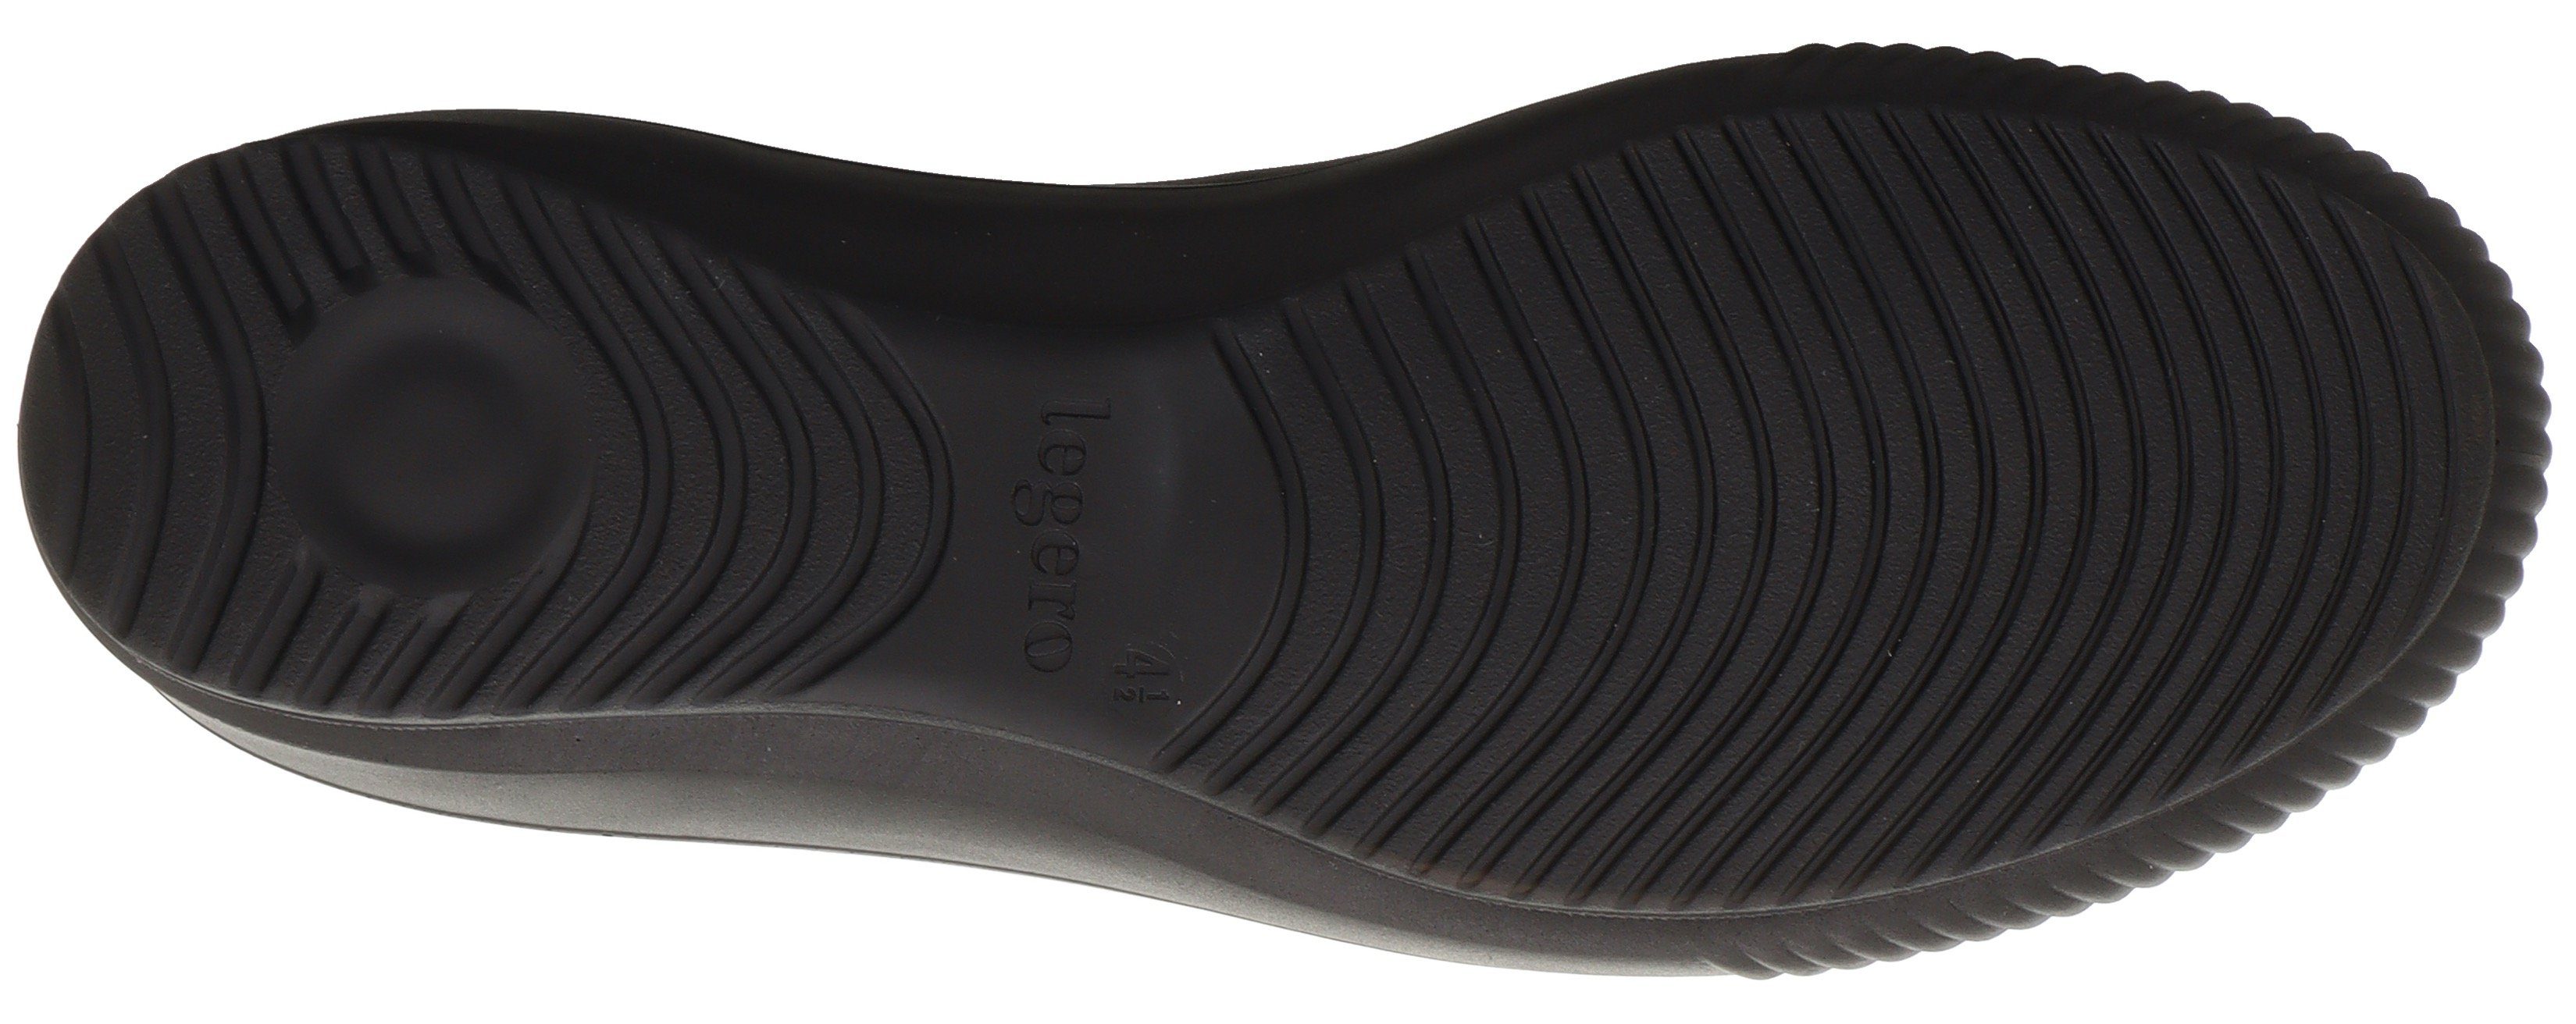 Sneaker Reißverschluss 5.0 Legero schwarz mit TANARO seitlichem